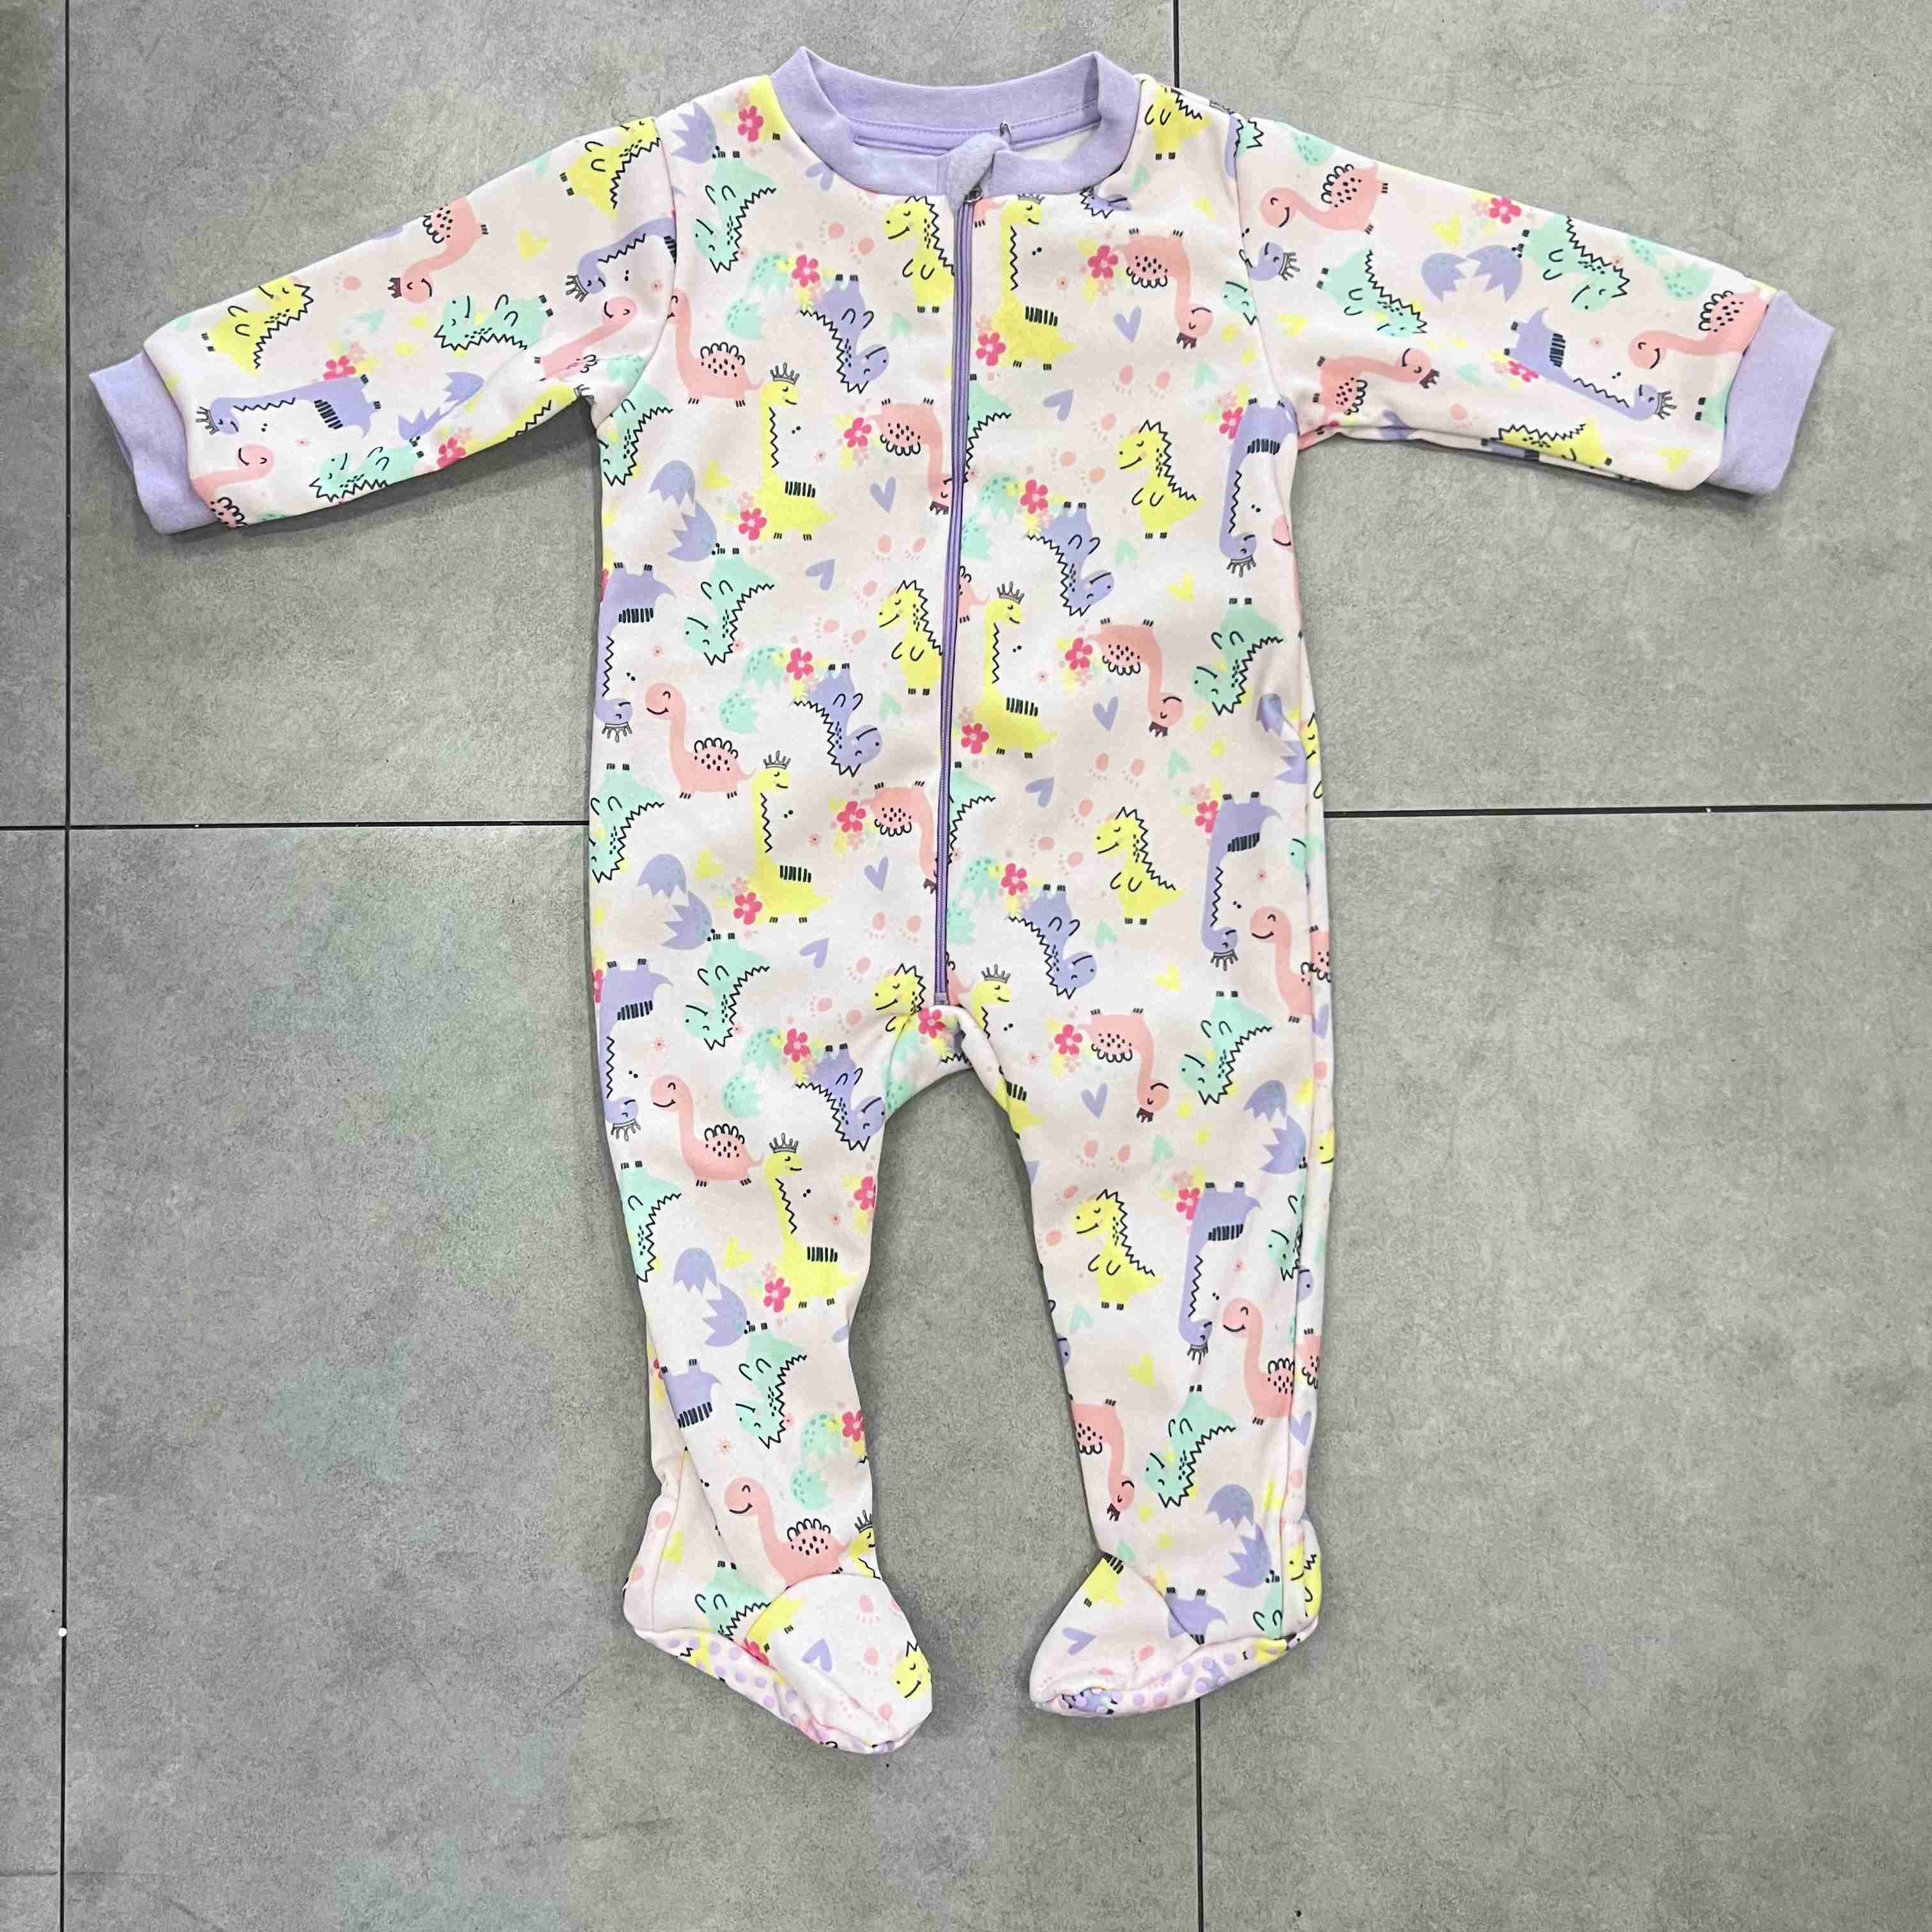 Fertiger Baby-Schlafanzug aus Polarfleece, 1-teilig, Baby-Nachtwäsche, Cartoon-AOP, mit rutschfester Sohle